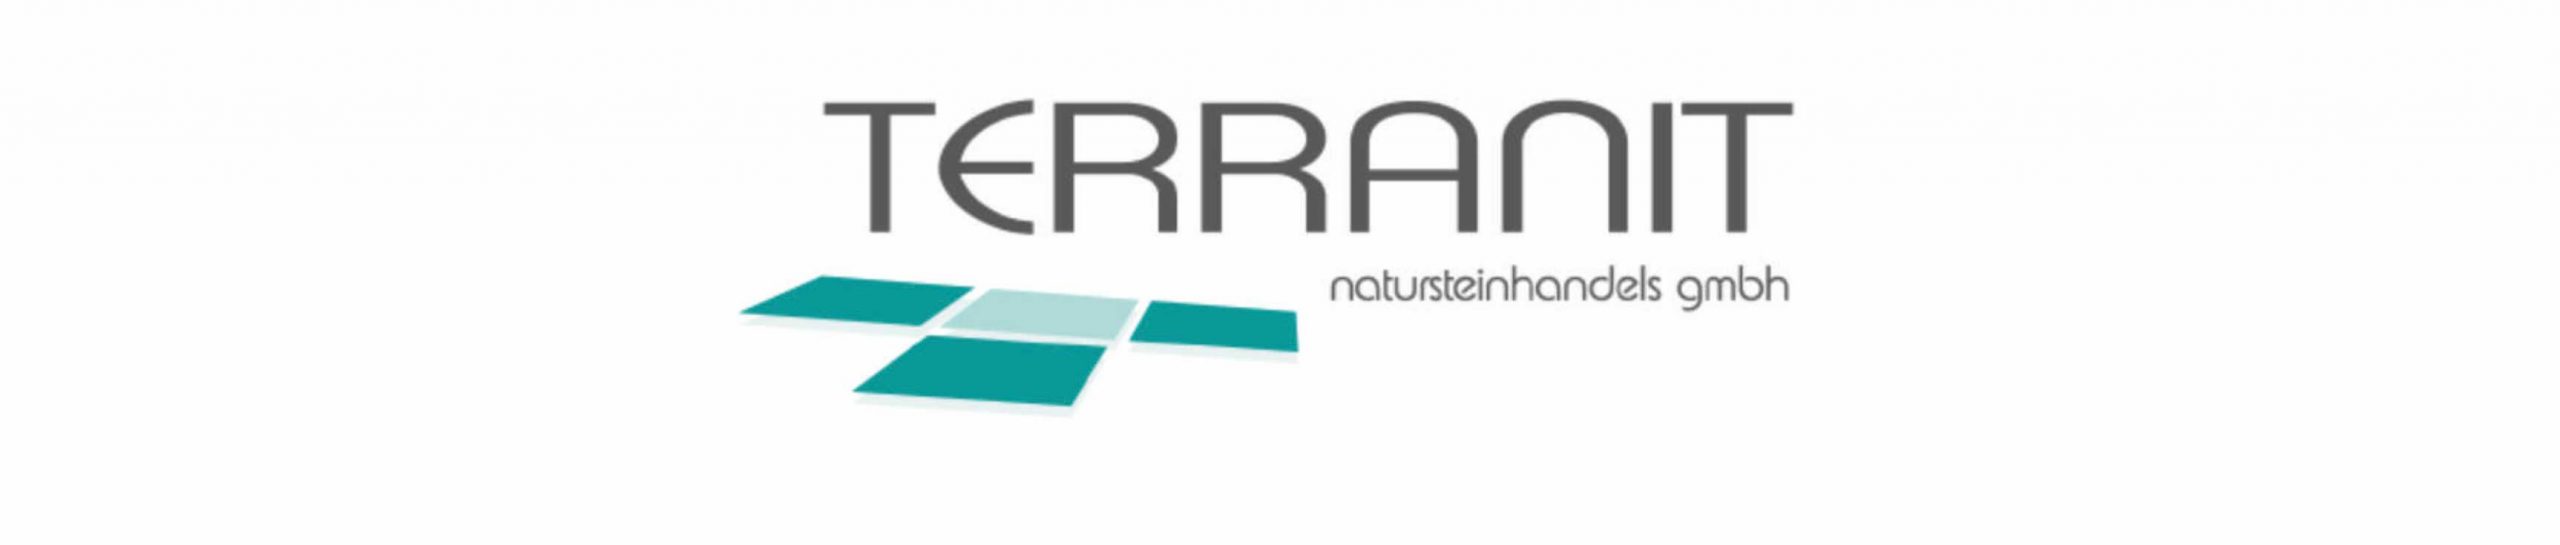 TERRANIT Natursteinhandels GmbH - Teltow